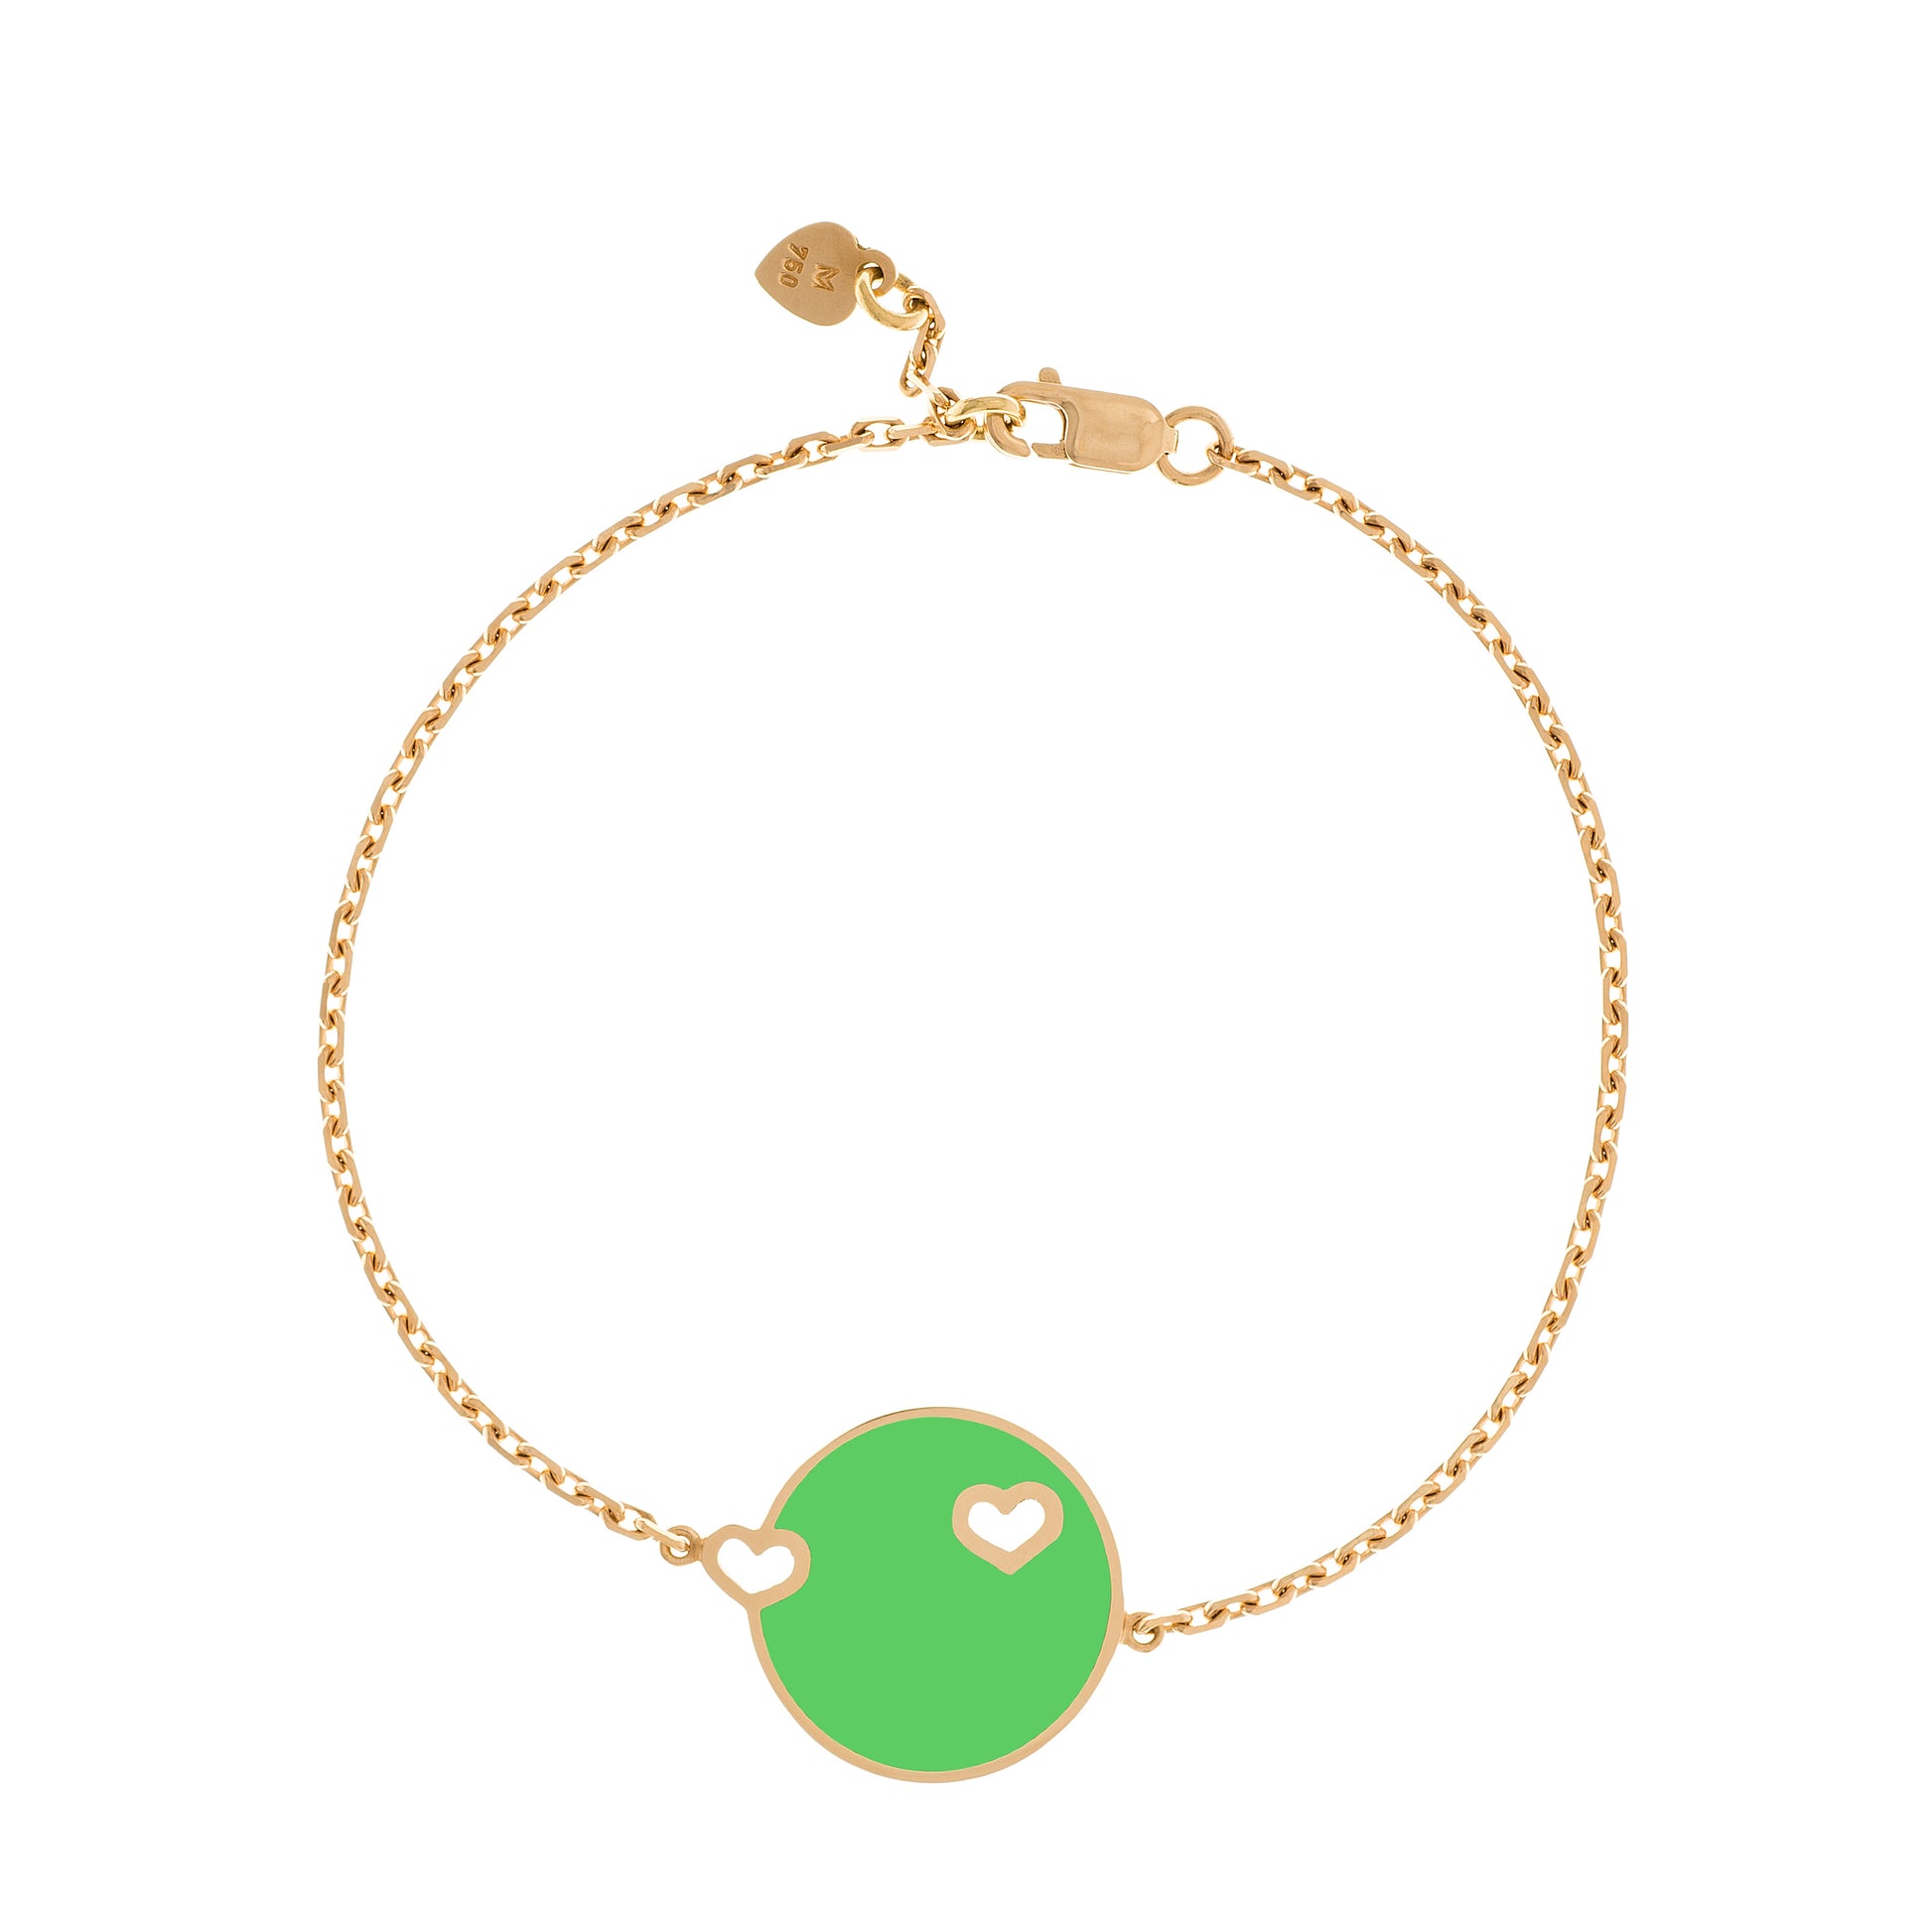 MORA bijoux bracelet Duo Coeur émaillé vert reversible en or jaune 18 carats, diamètre de la pièce 17mm, longueur de la chaîne 16 cm avec petit coeur en or jaune 18 carats soudé sur le fermoir.